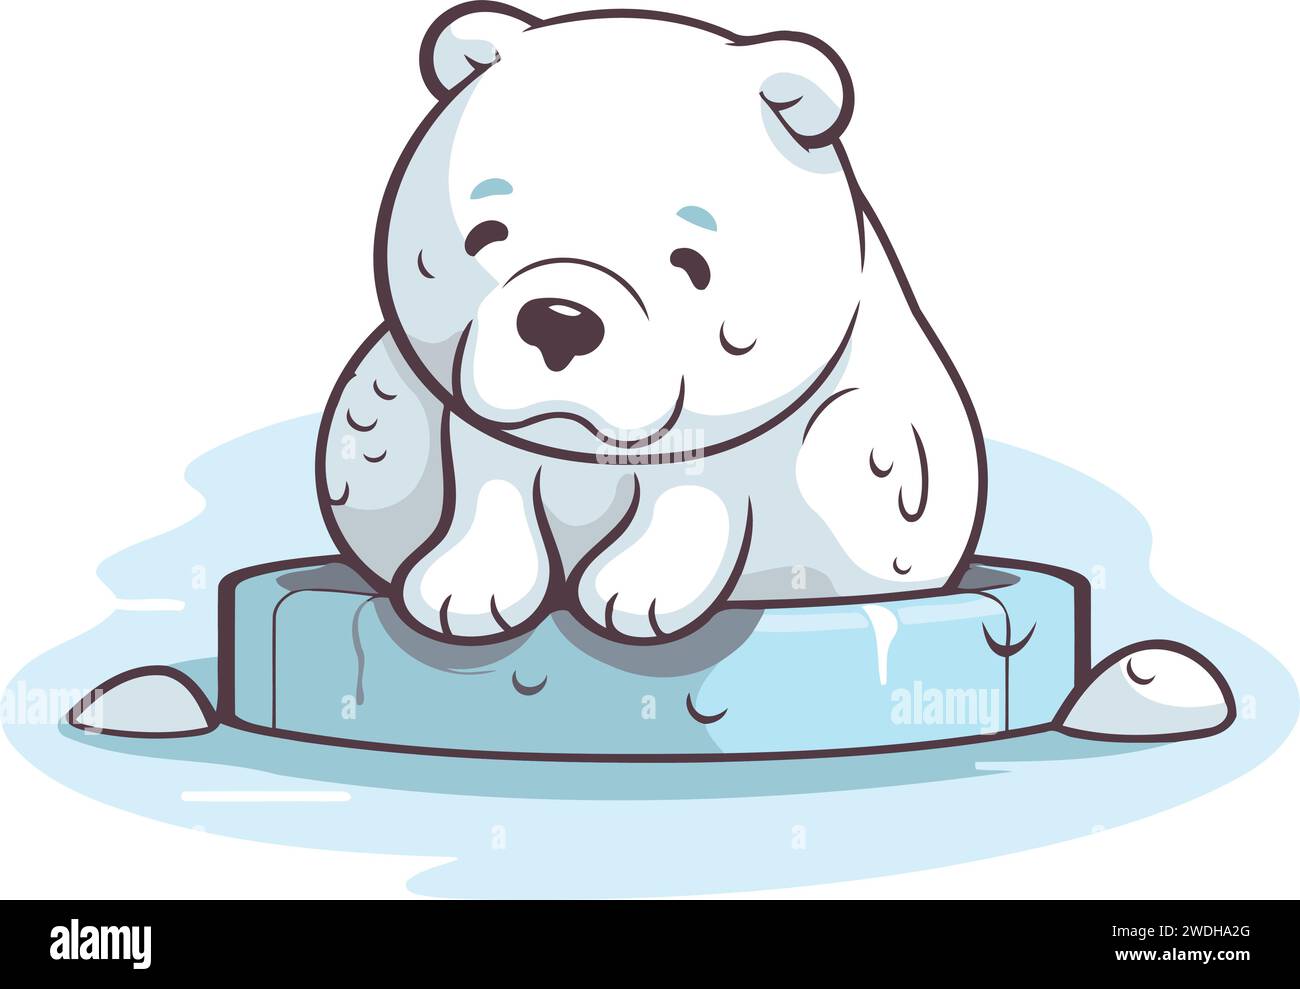 Cute cartoon polar bear sitting on ice cube. Vector illustration. Stock Vector